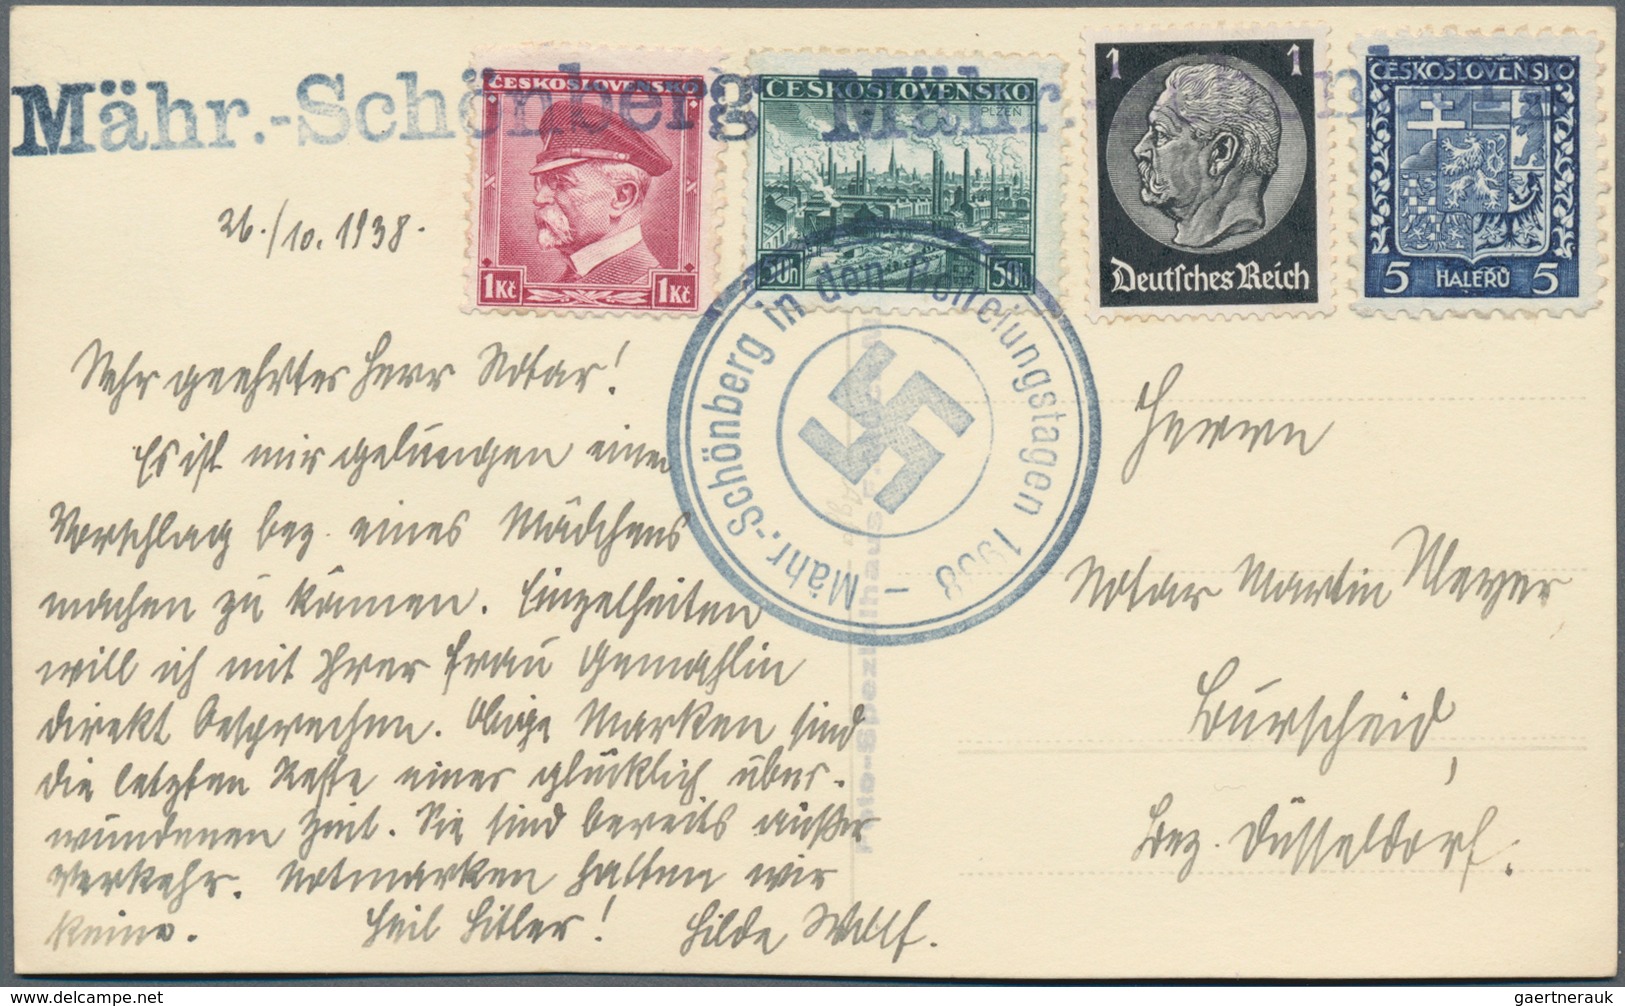 Sudetenland: 1938, Lot Von 31 Marken Und Zwei Belegen, Teils Signiert Mahr BPP, Besichtigen! - Sudetes